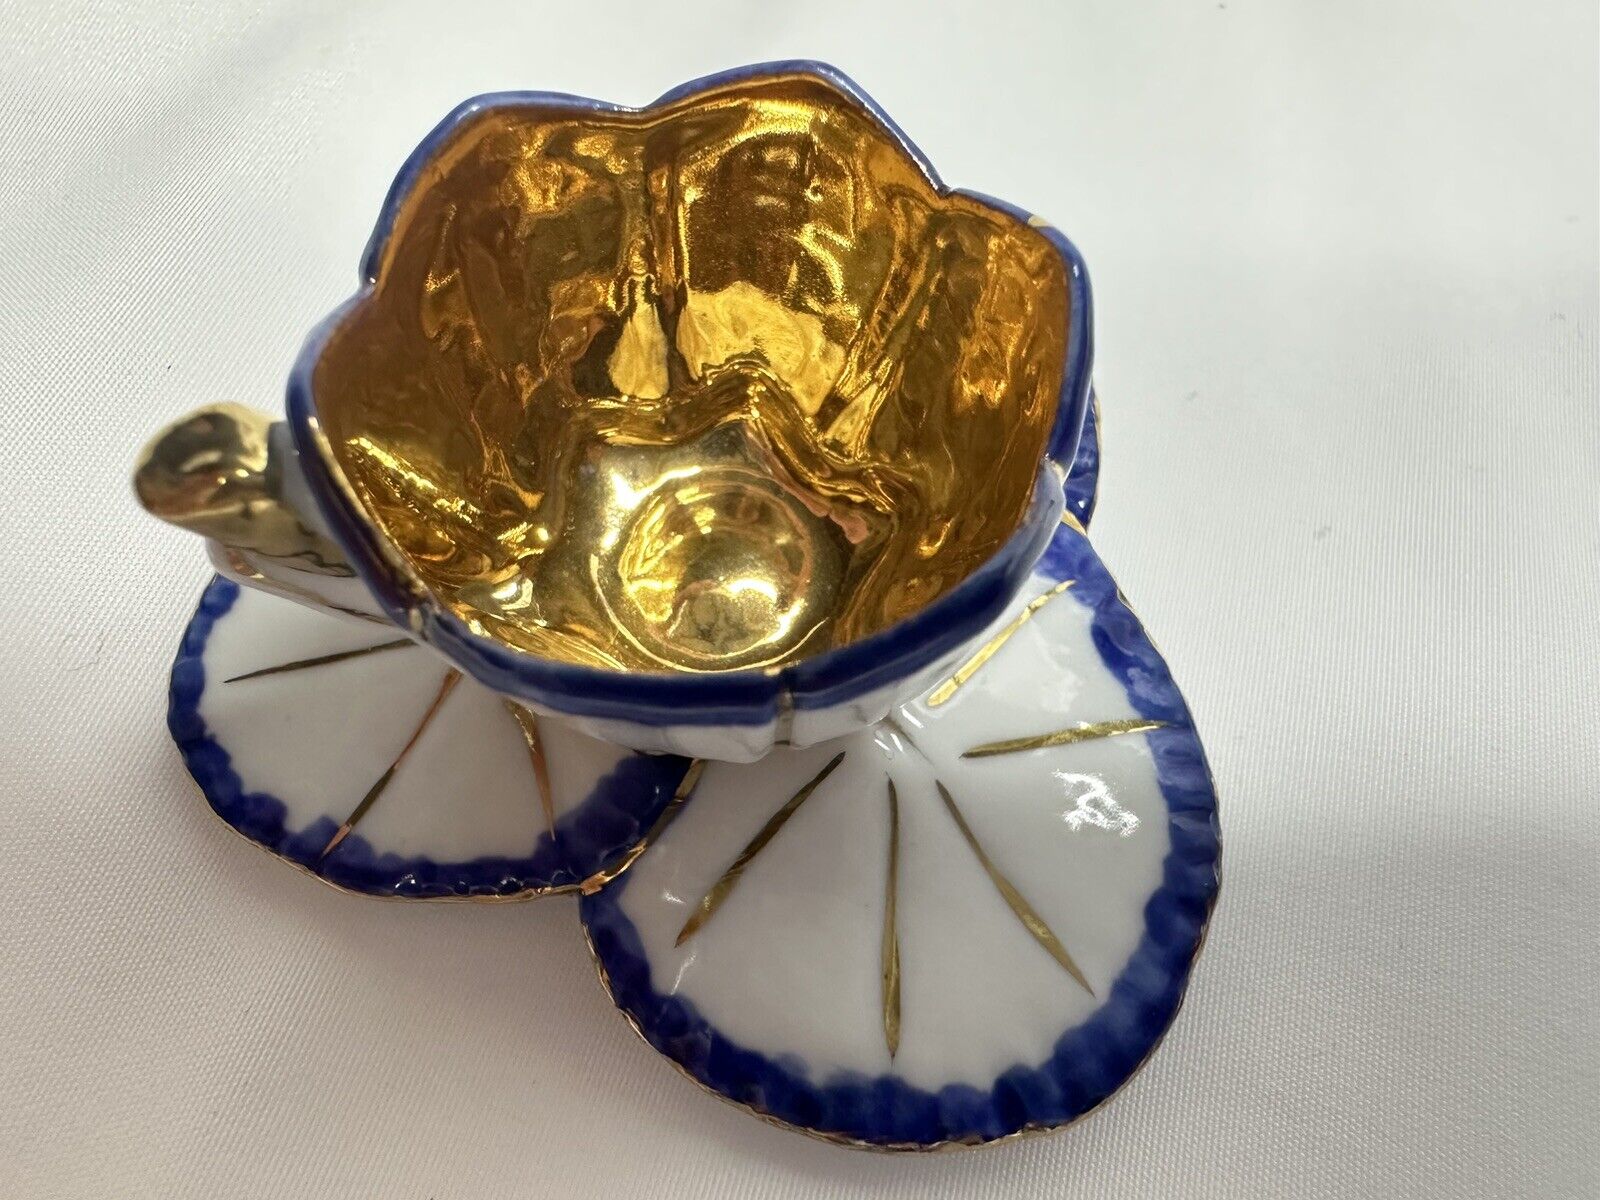 Antique Miniature Porcelain Teacup & Saucer Dollhouse Decor Gold Trim 